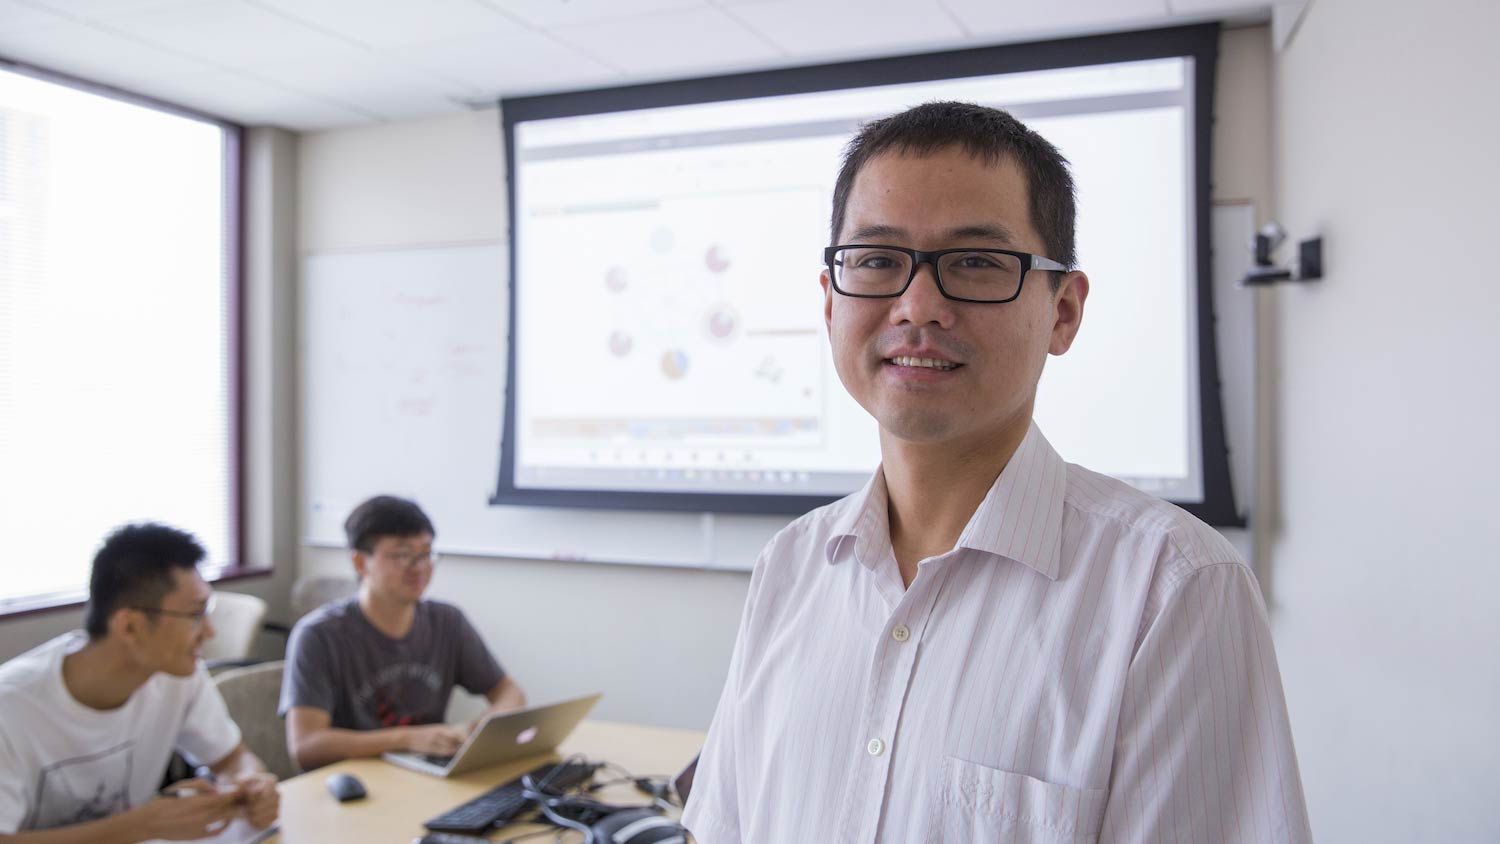 Machine learning alumnus Hanghang Tong portrayed